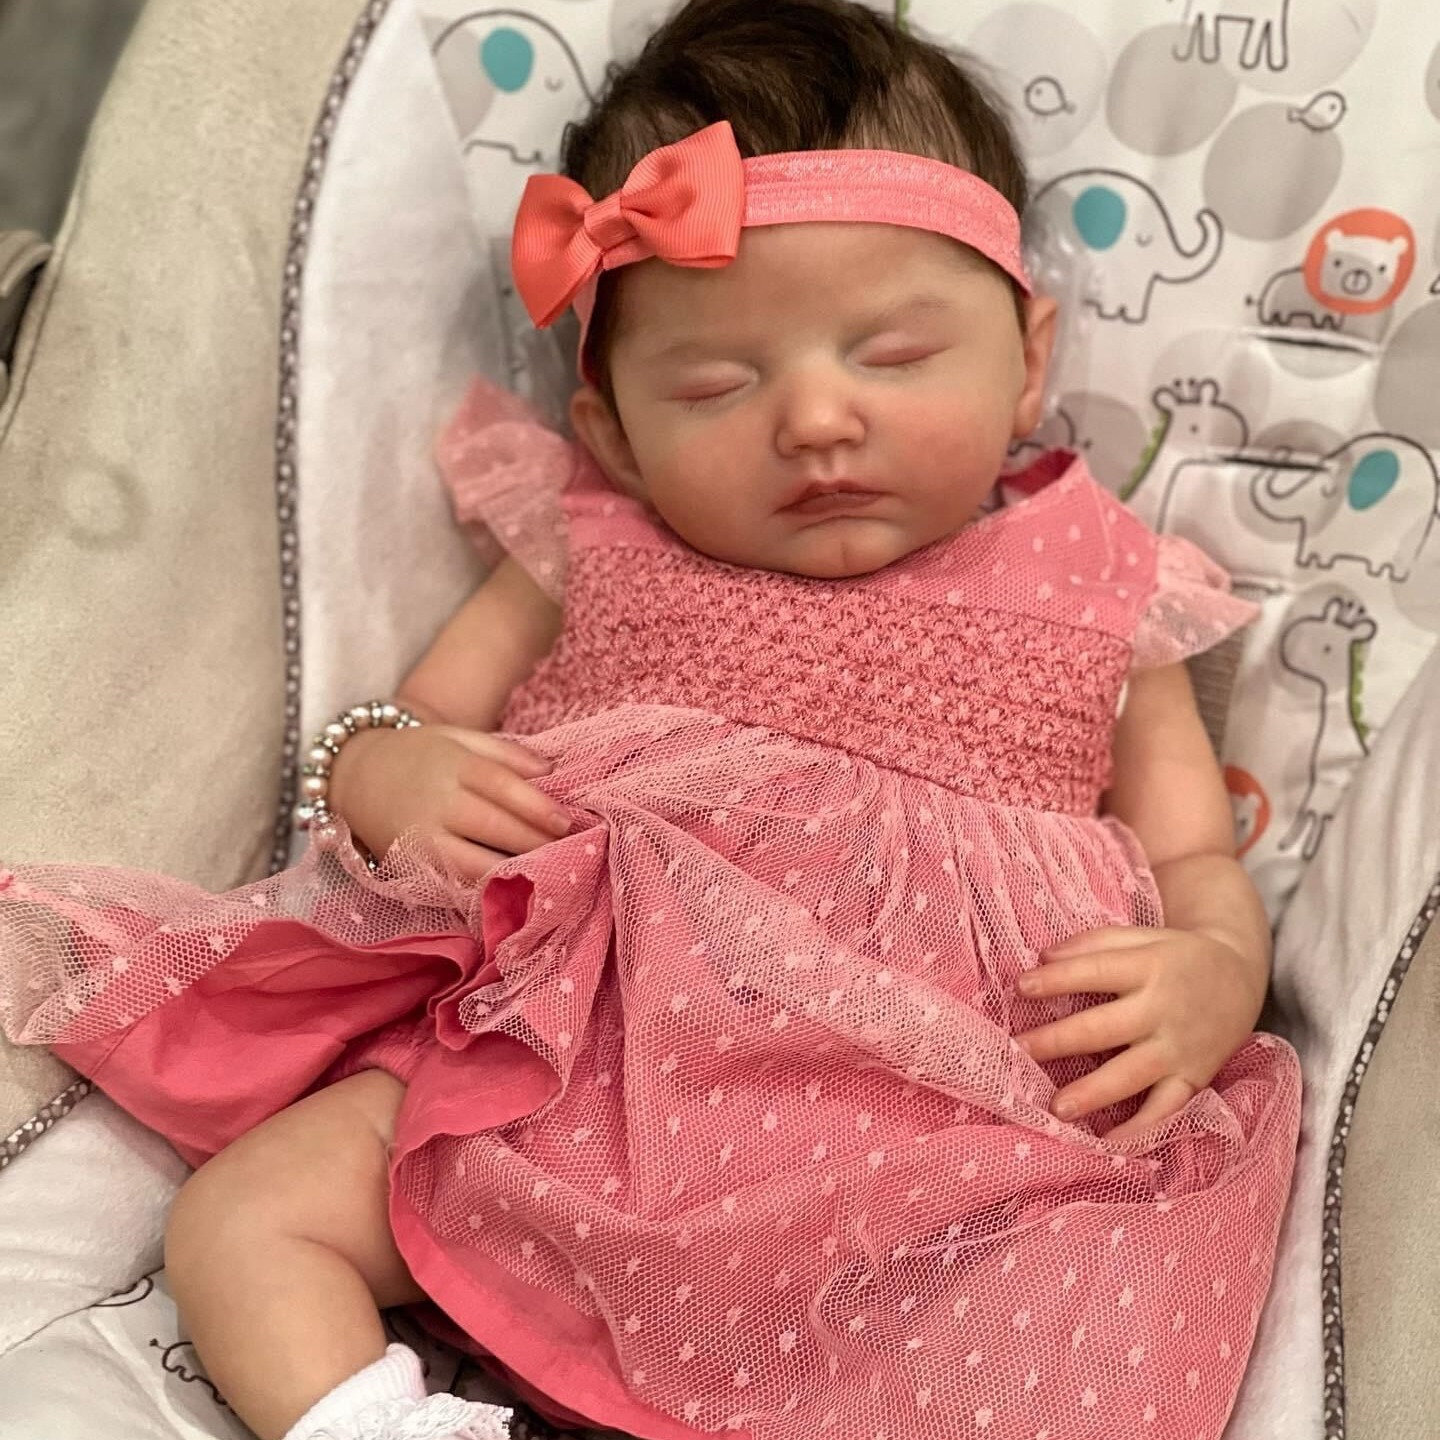 Compre Npk 55cm bebe boneca reborn criança menina rosa princesa